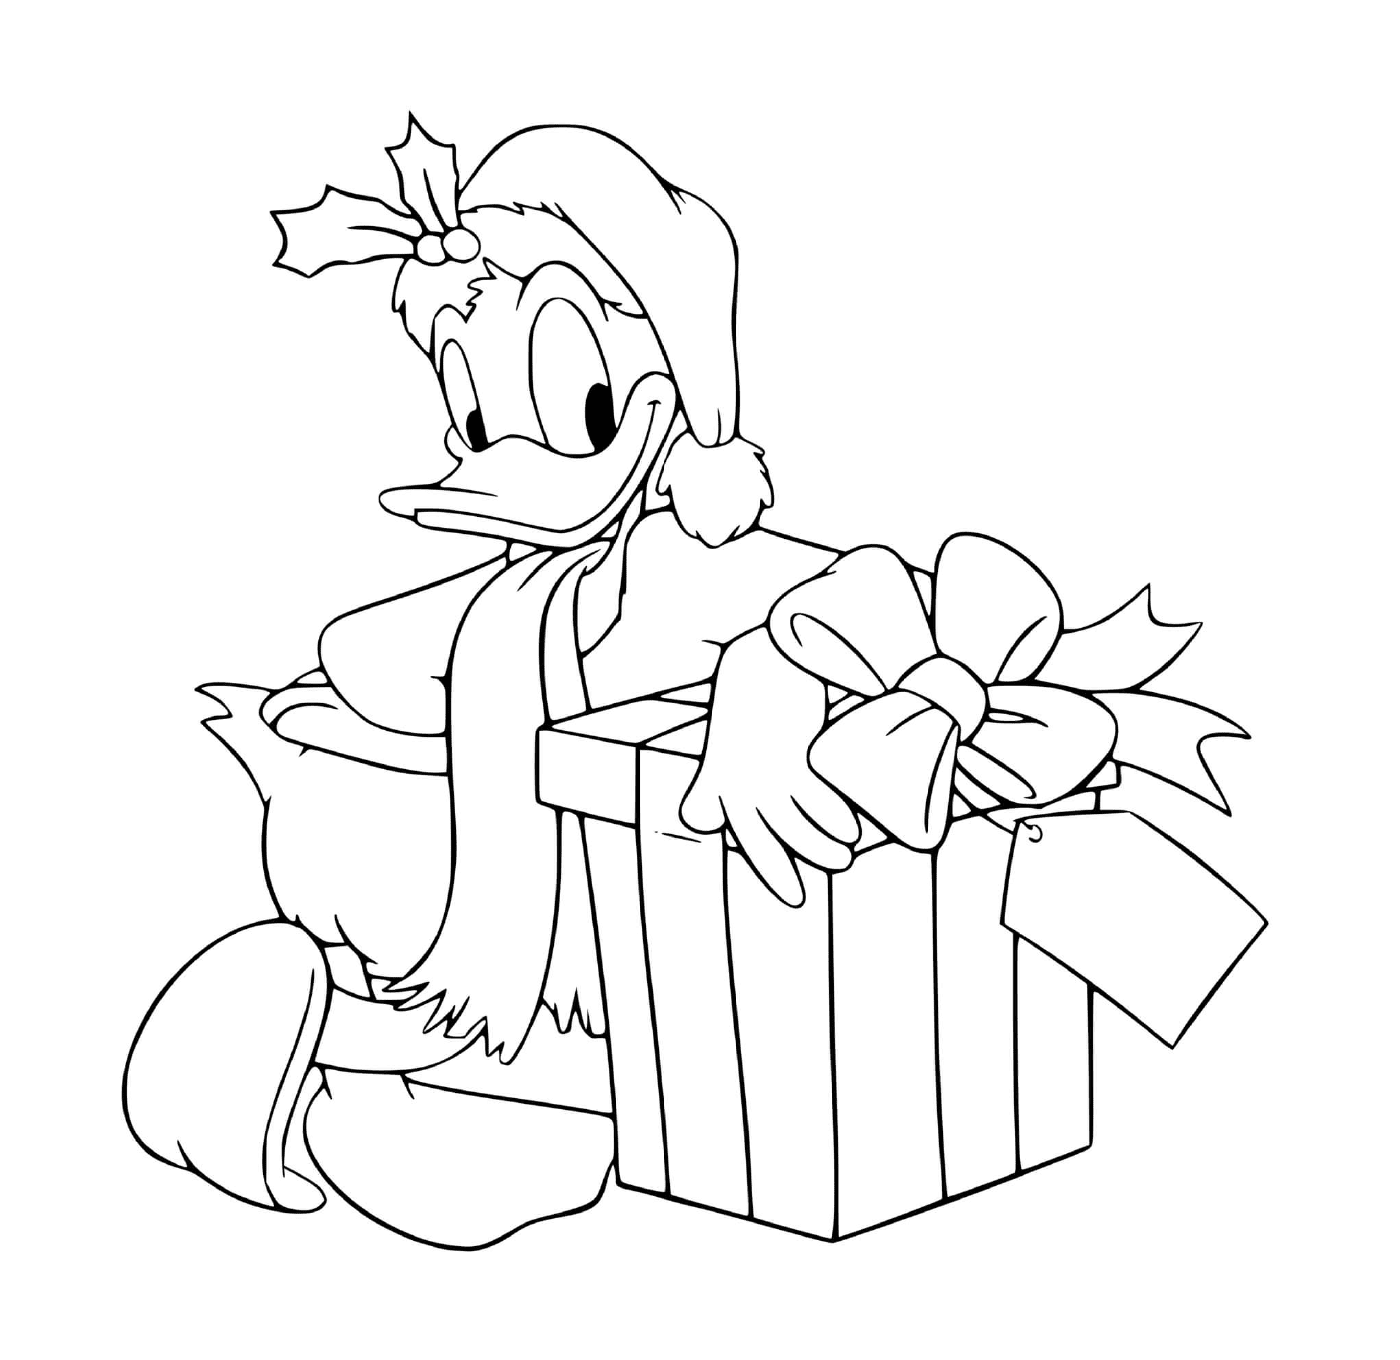  Donald ao lado de um presente 